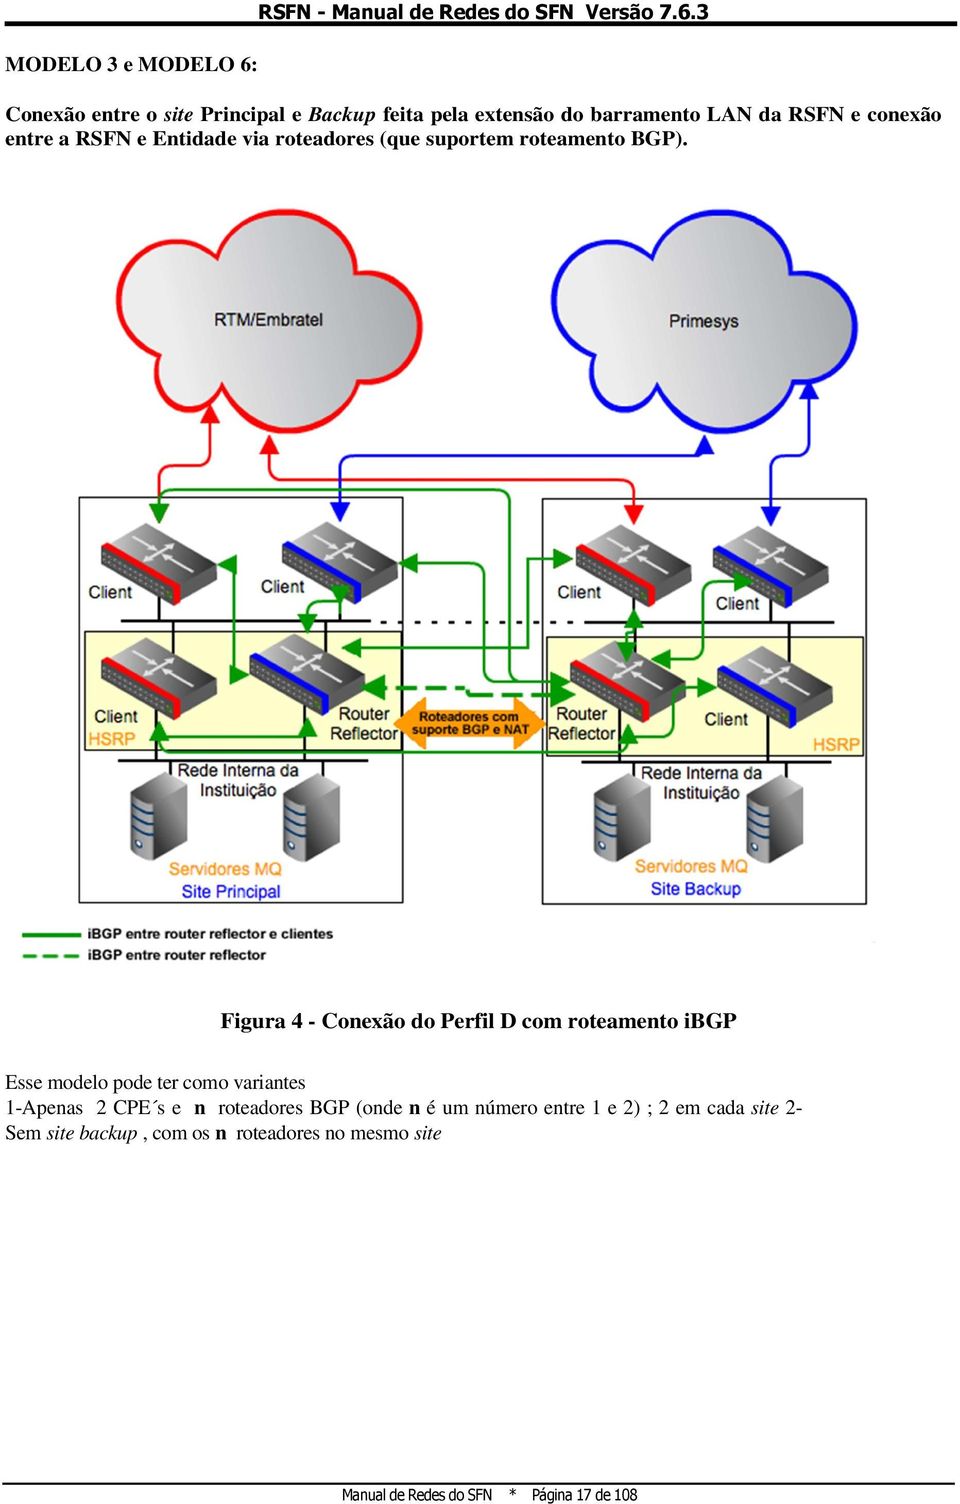 3 Conexão entre o site Principal e Backup feita pela extensão do barramento LAN da RSFN e conexão entre a RSFN e Entidade